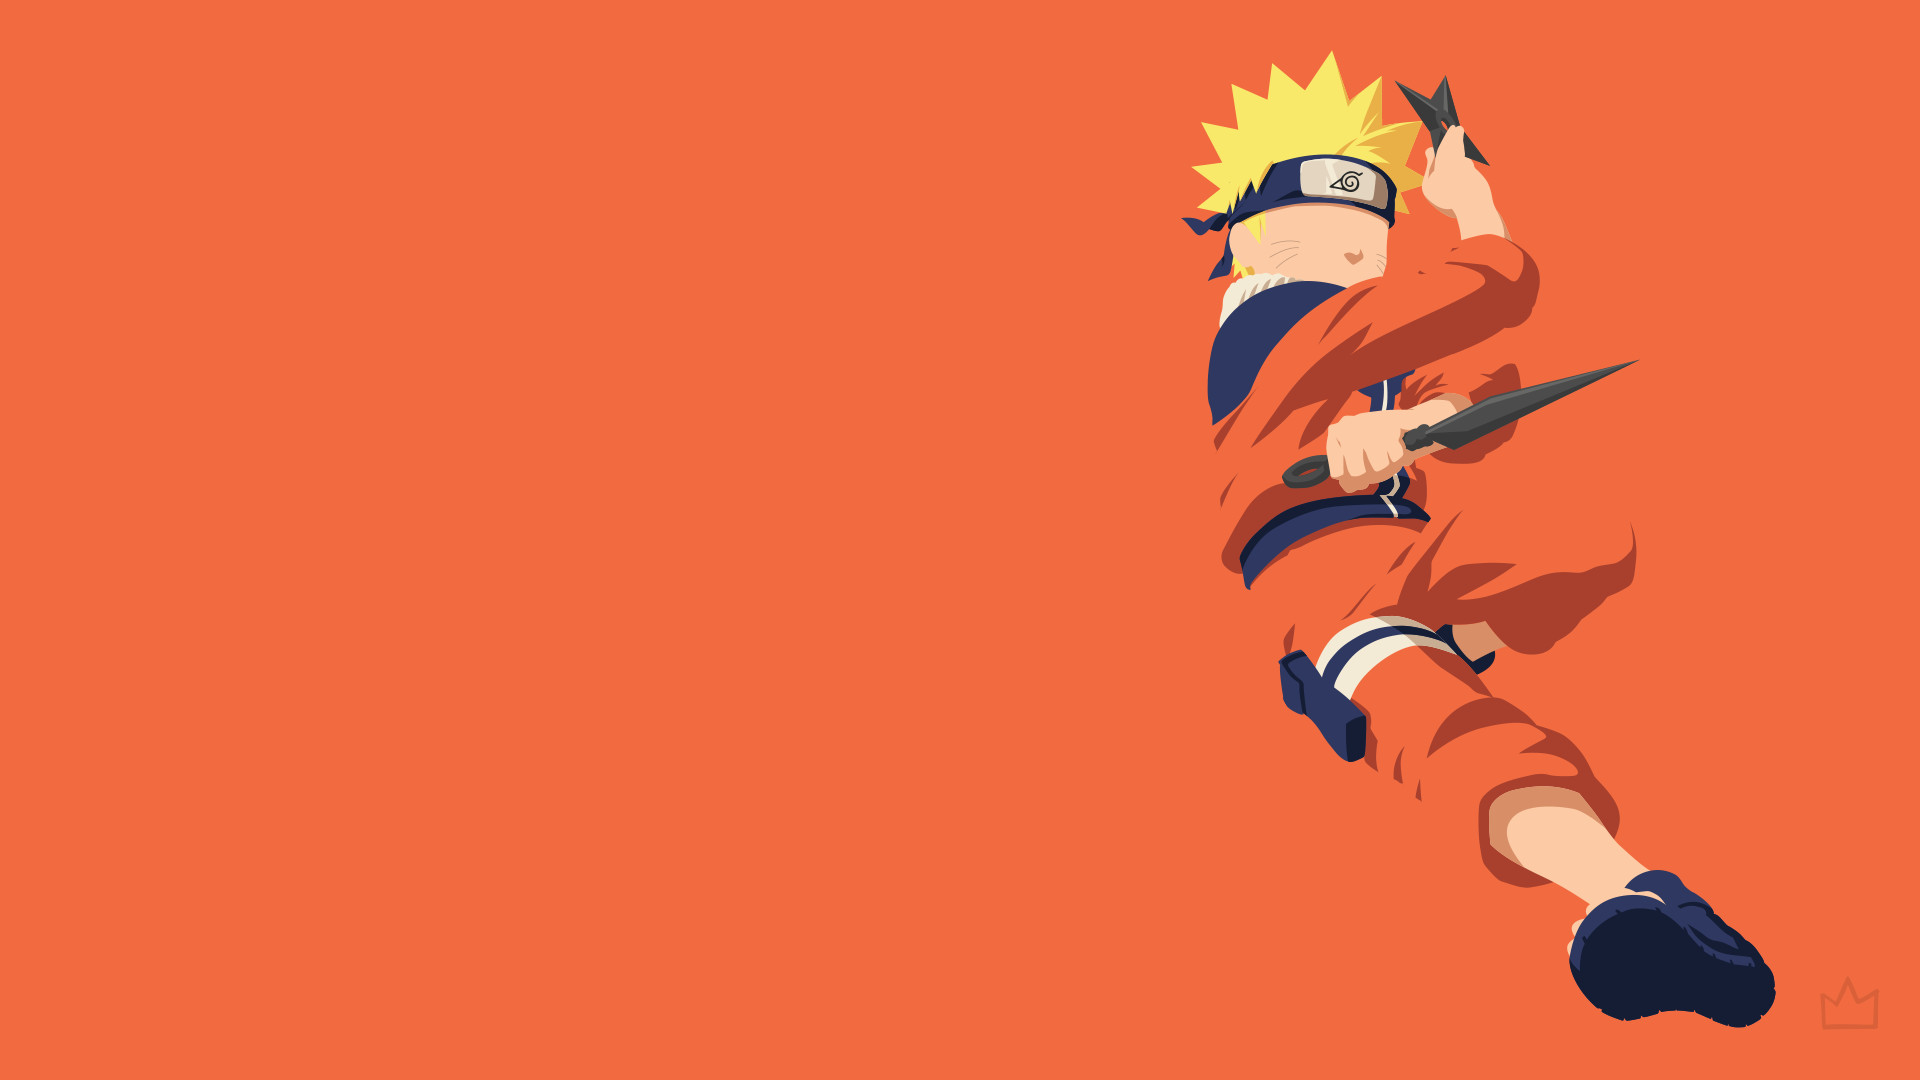 1920x1080 ... Uzumaki Naruto (Naruto) by Klikster